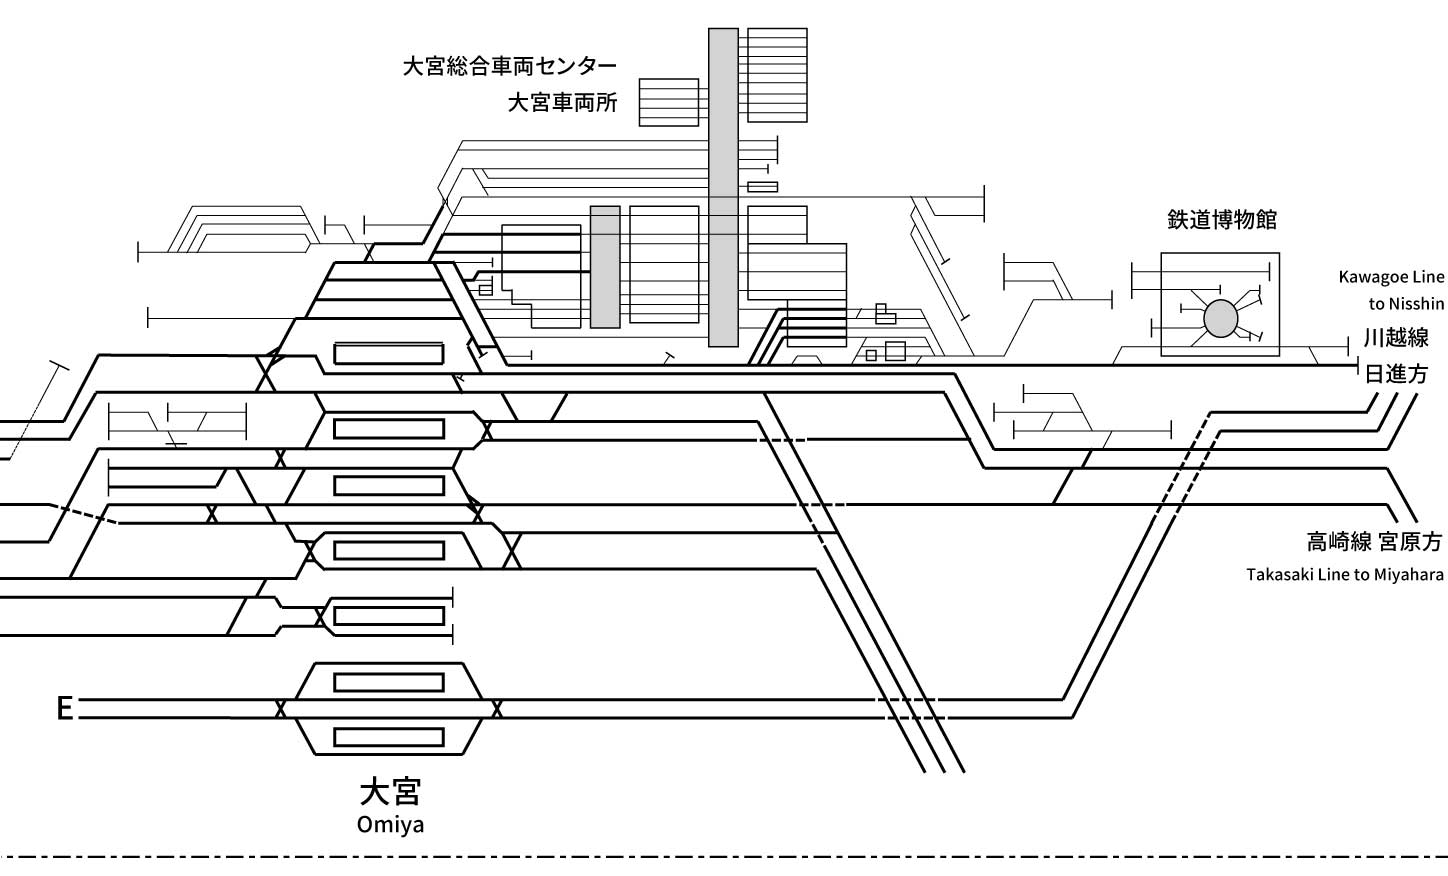 配線略図 Net 関東中心に鉄道配線略図を公開